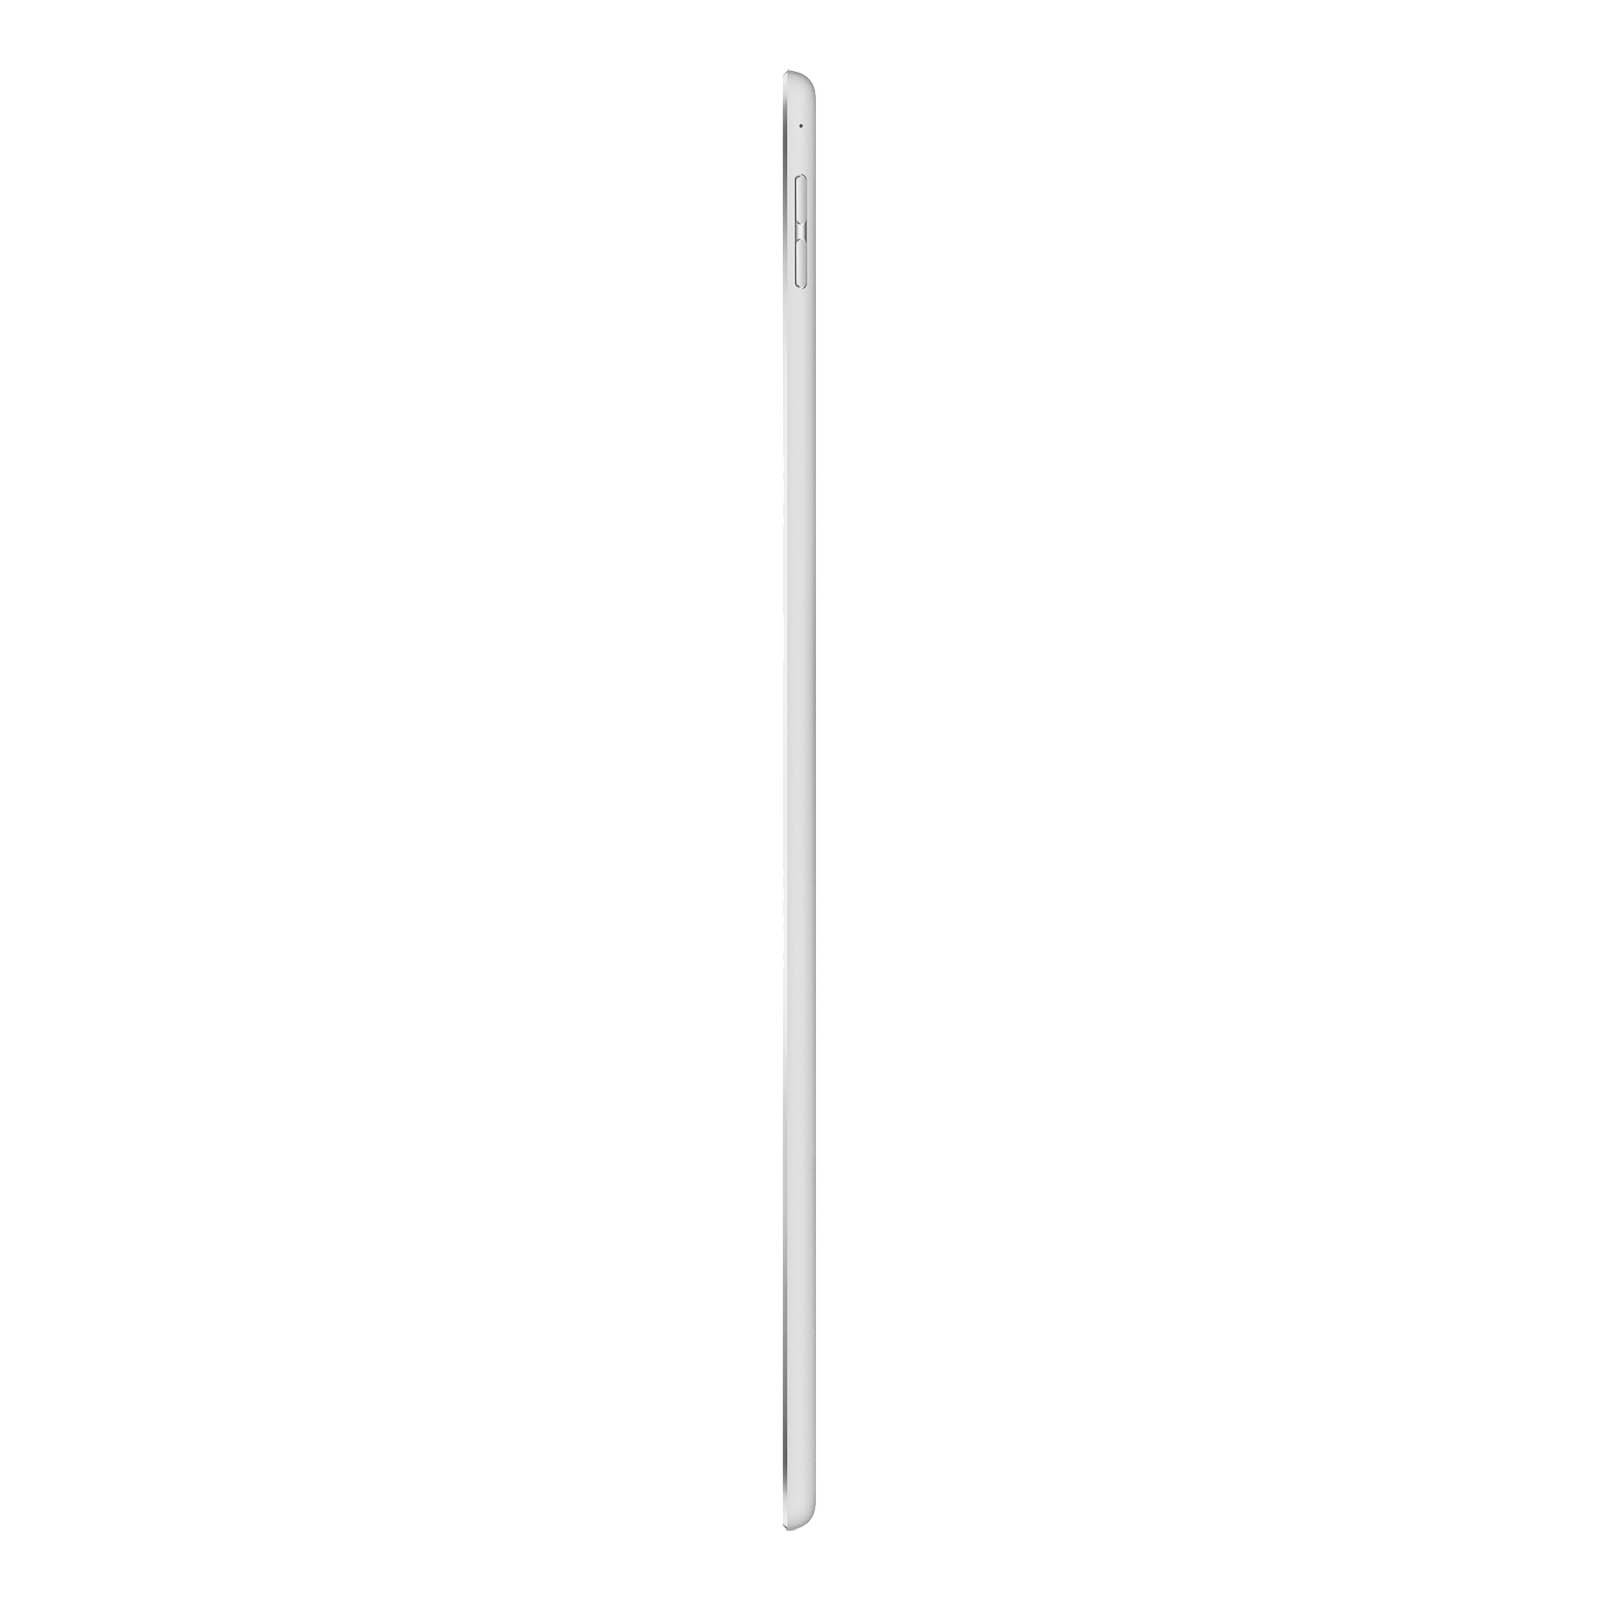 iPad Pro 12.9 Inch 3rd Gen 64GB Silver Pristine - WiFi